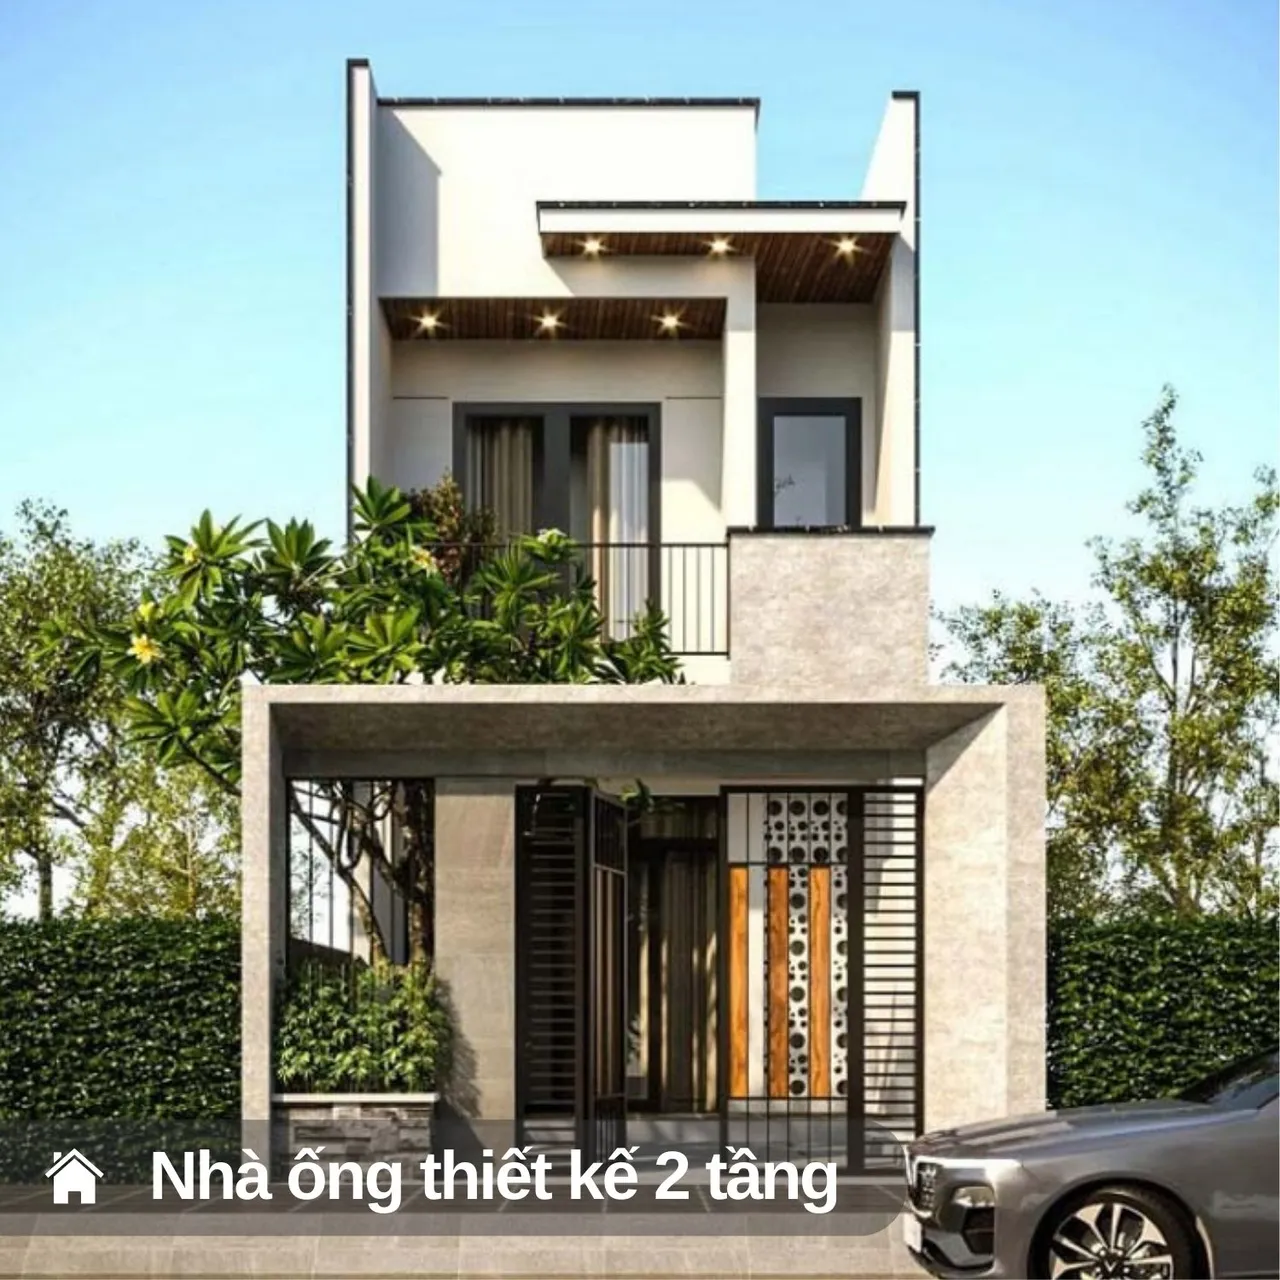 Với việc thiết kế 2 tầng, nhà ống có thể tận dụng không gian sống và cải thiện tính tiện nghi cho gia đình.